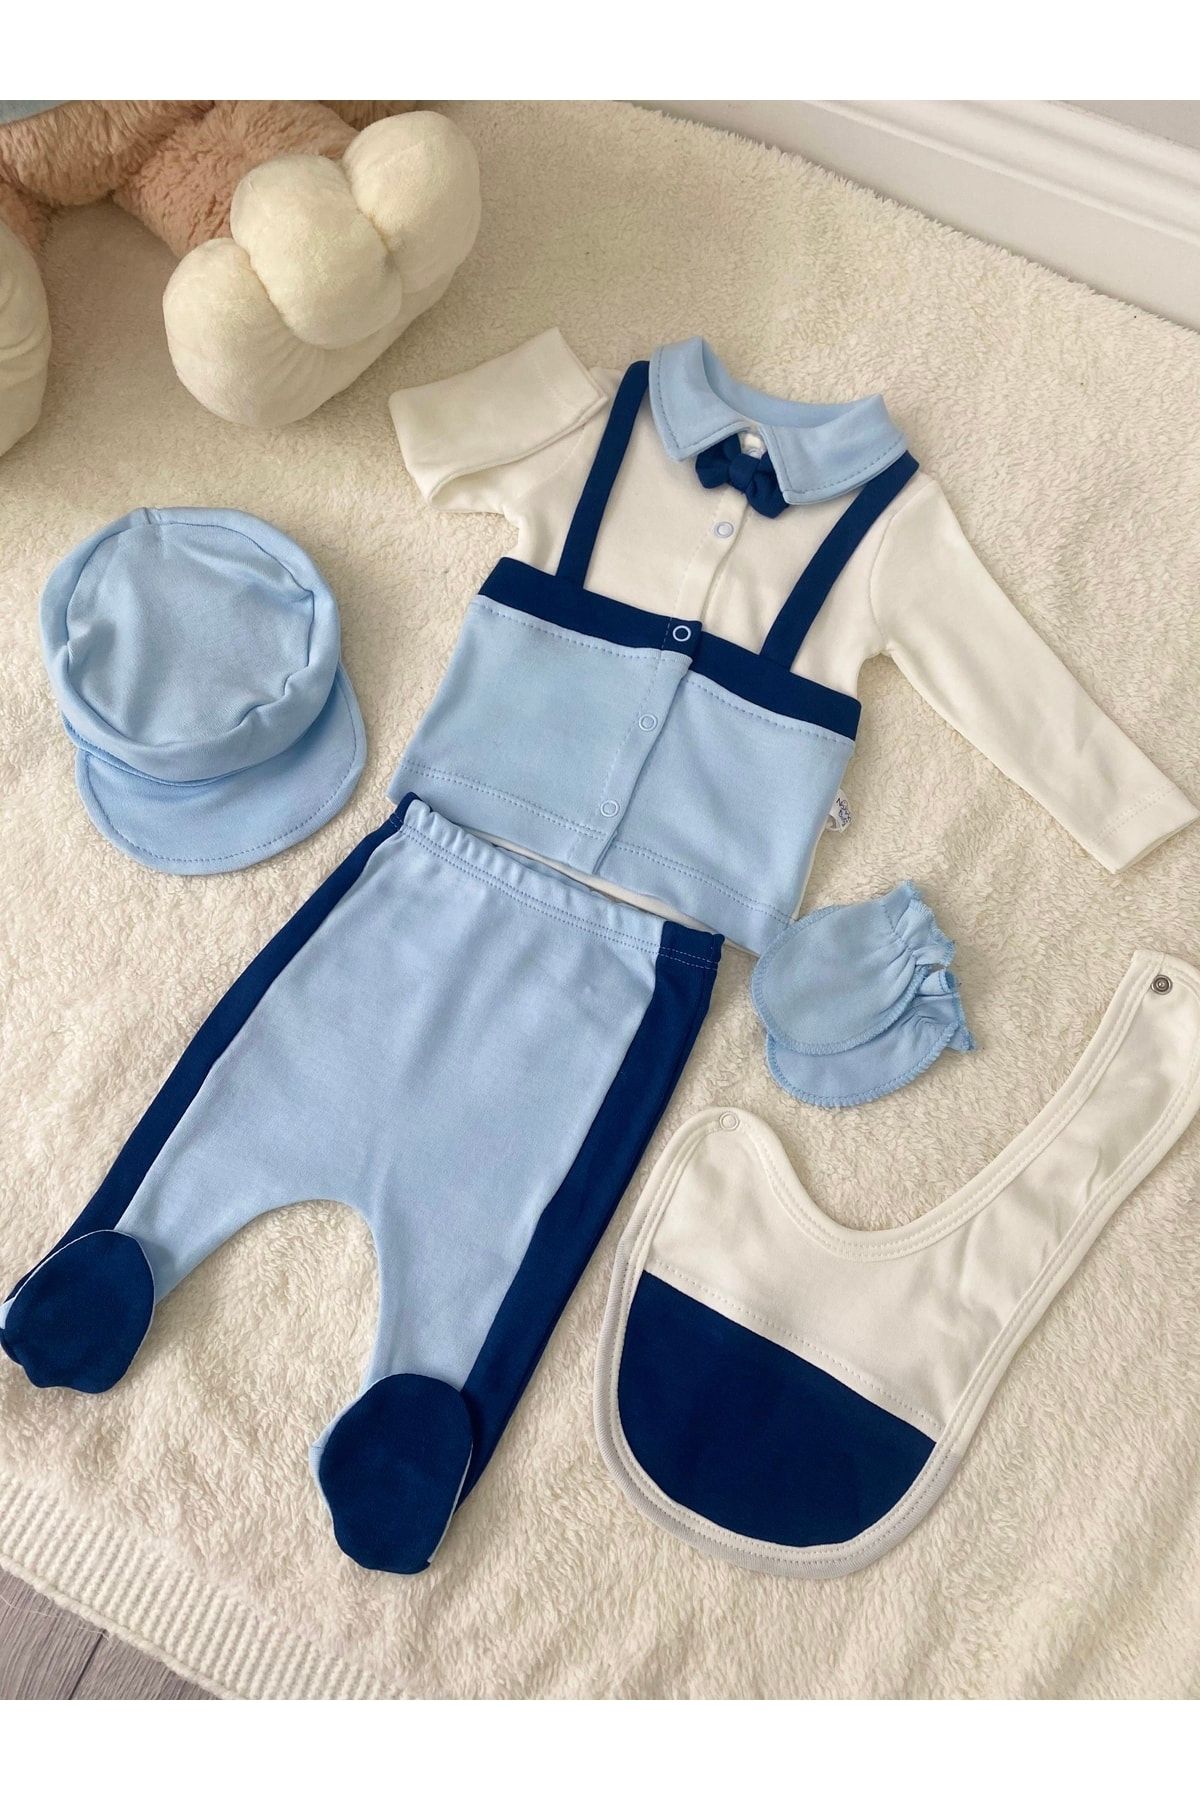 Nonna Baby Bebek Papyon Hastane Çıkışı Zıbın Set Mavi